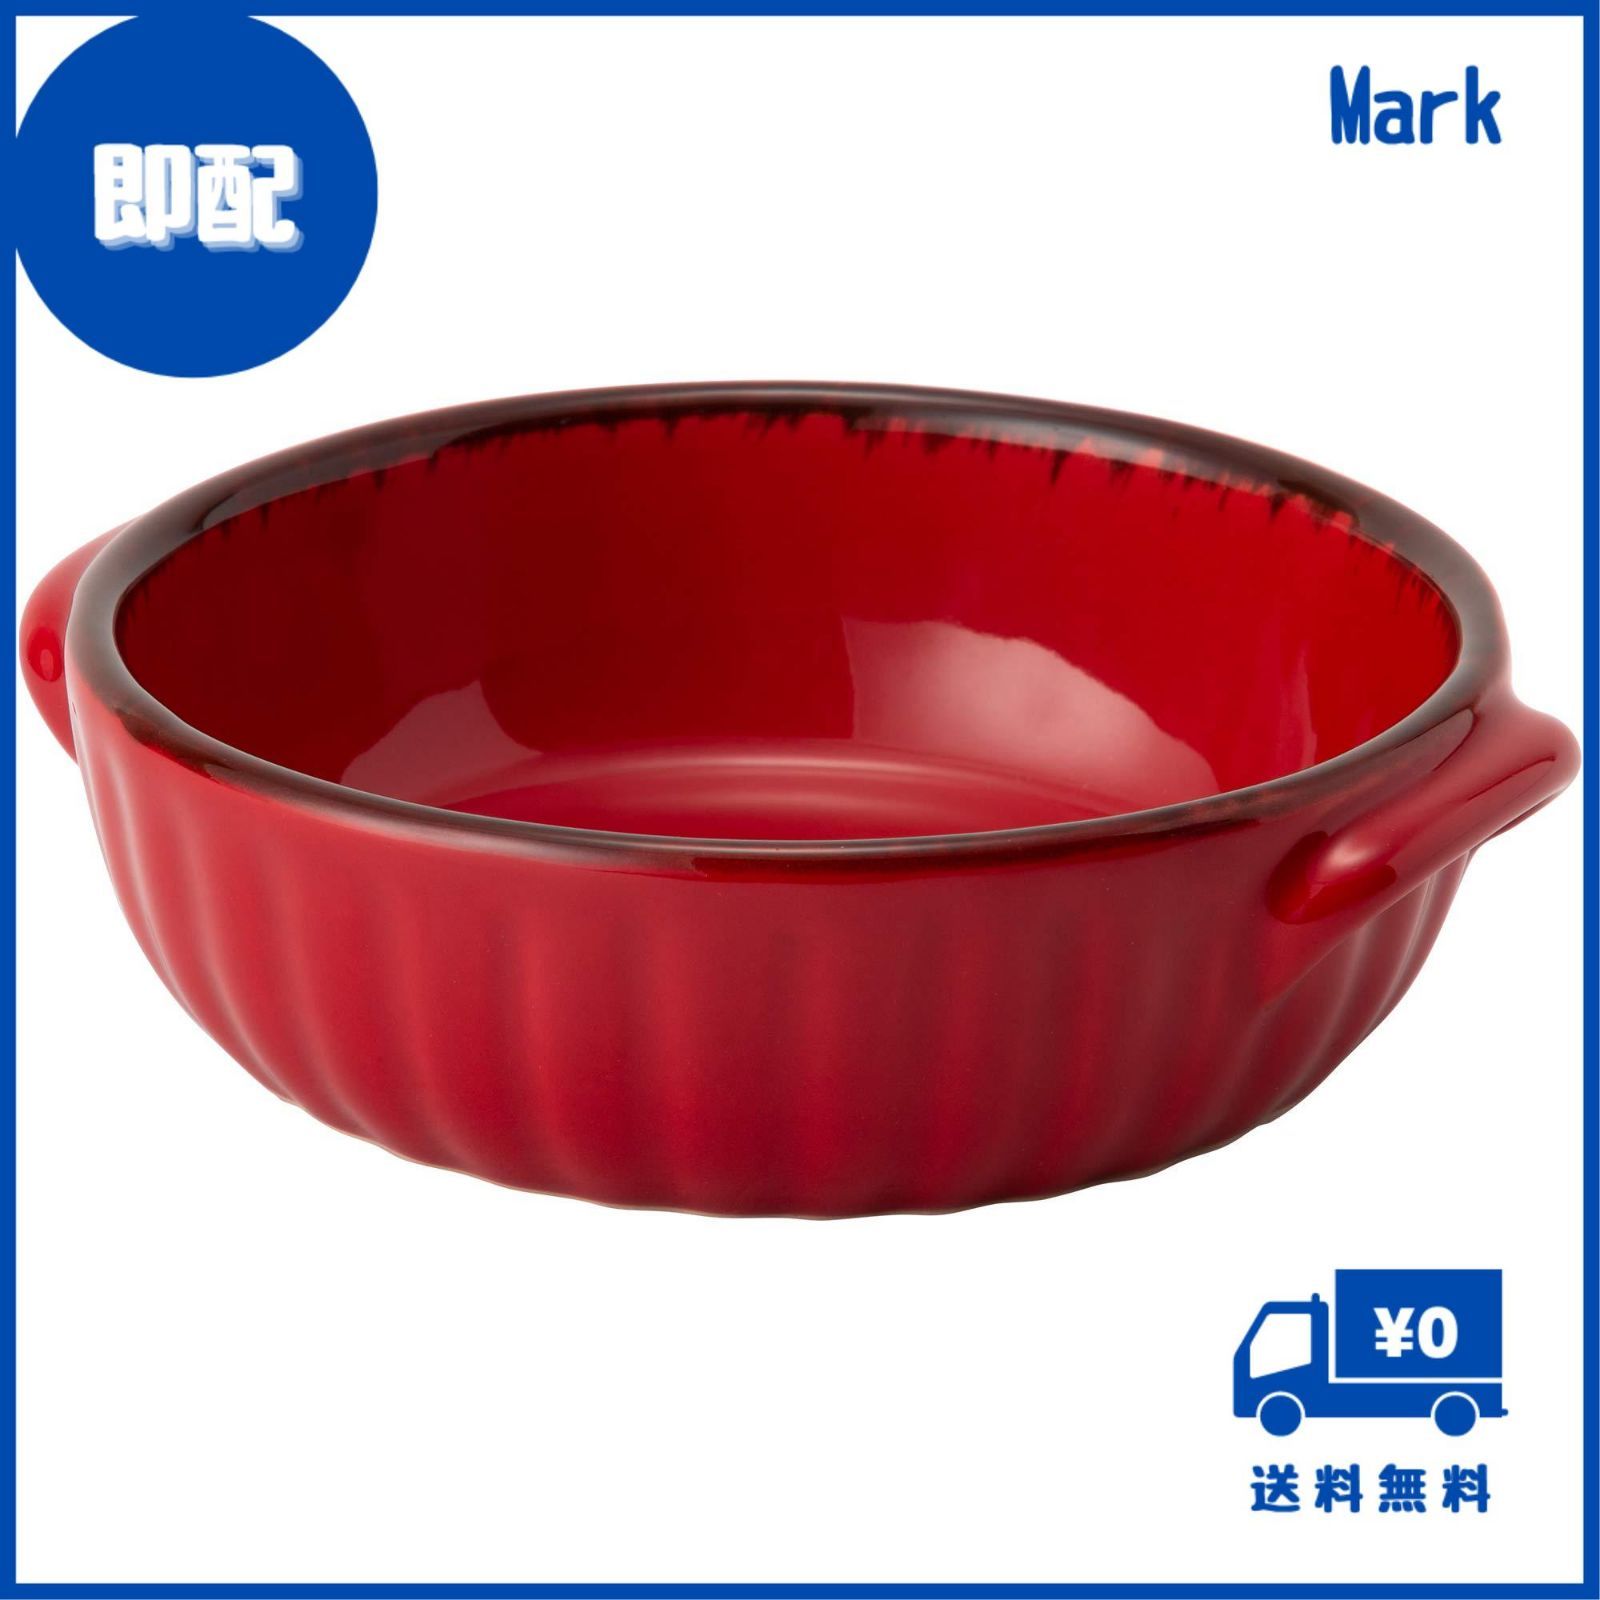 TAMAKI グラタン皿 ギャザー レッド 直径16×奥行14.5×高さ4.5cm 480ml 電子レンジ・食洗機・オーブン対応 T-783696 -  メルカリ